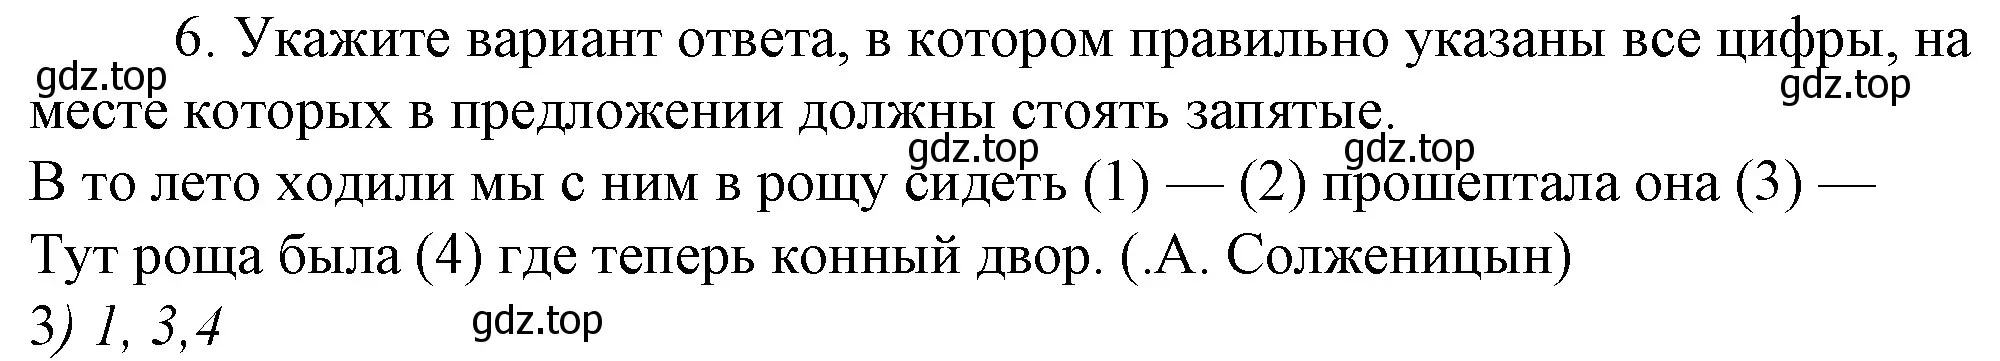 Решение 4. номер 6 (страница 213) гдз по русскому языку 10-11 класс Гольцова, Шамшин, учебник 2 часть